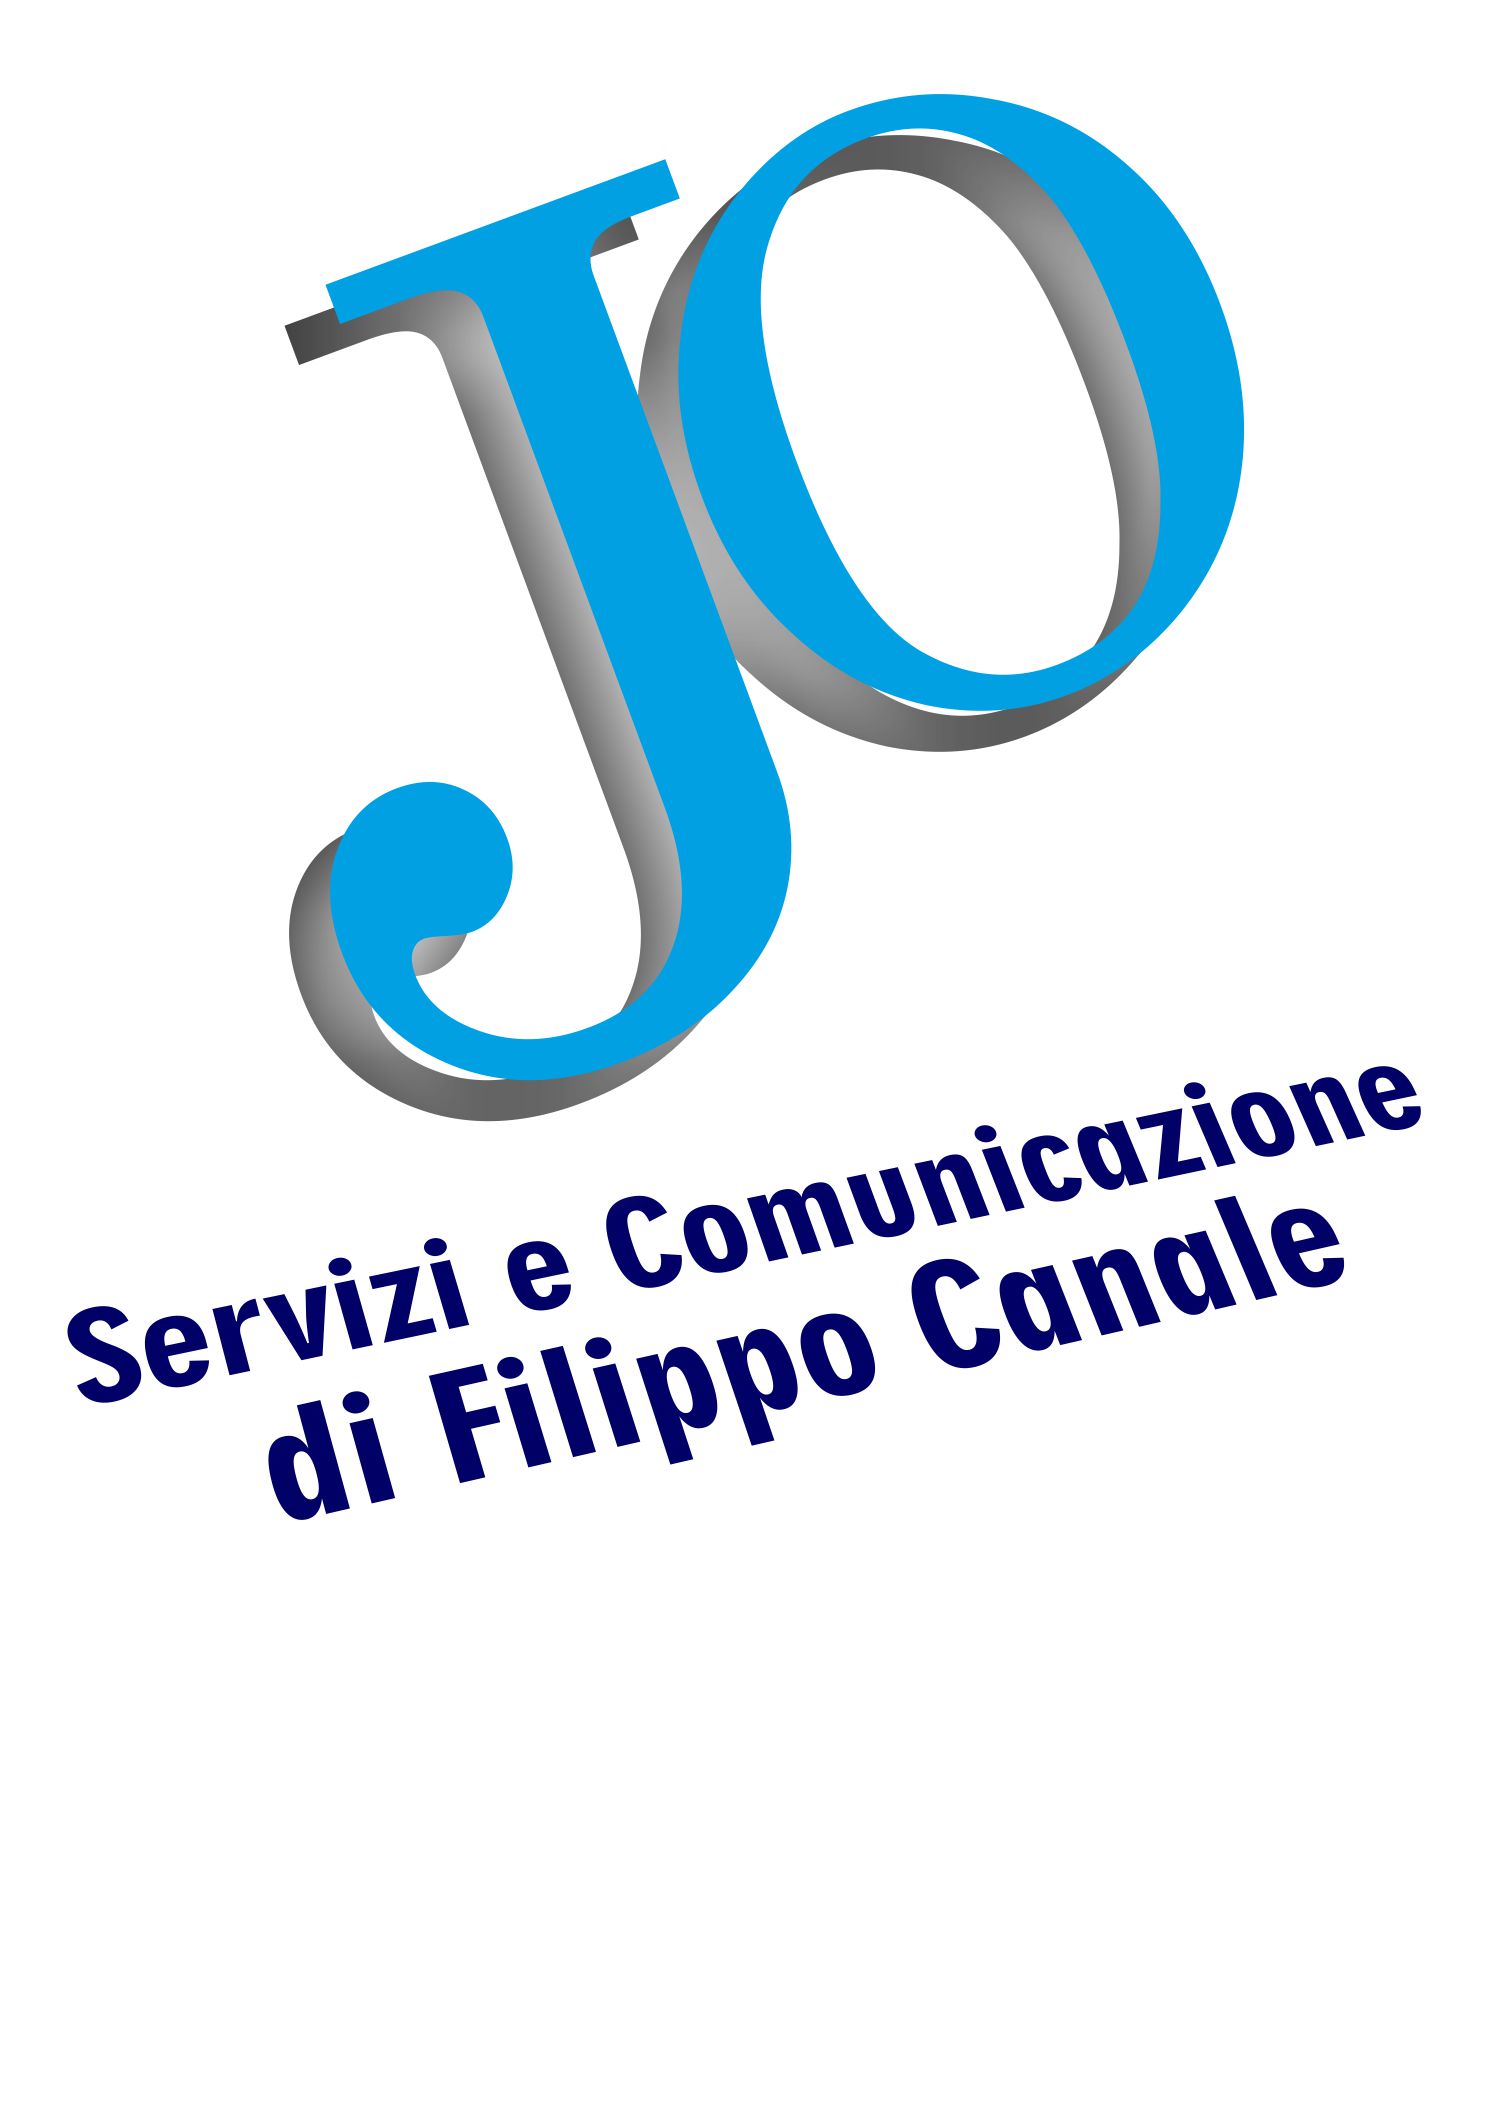 images/media/Logo-Jo-x-cell.jpg